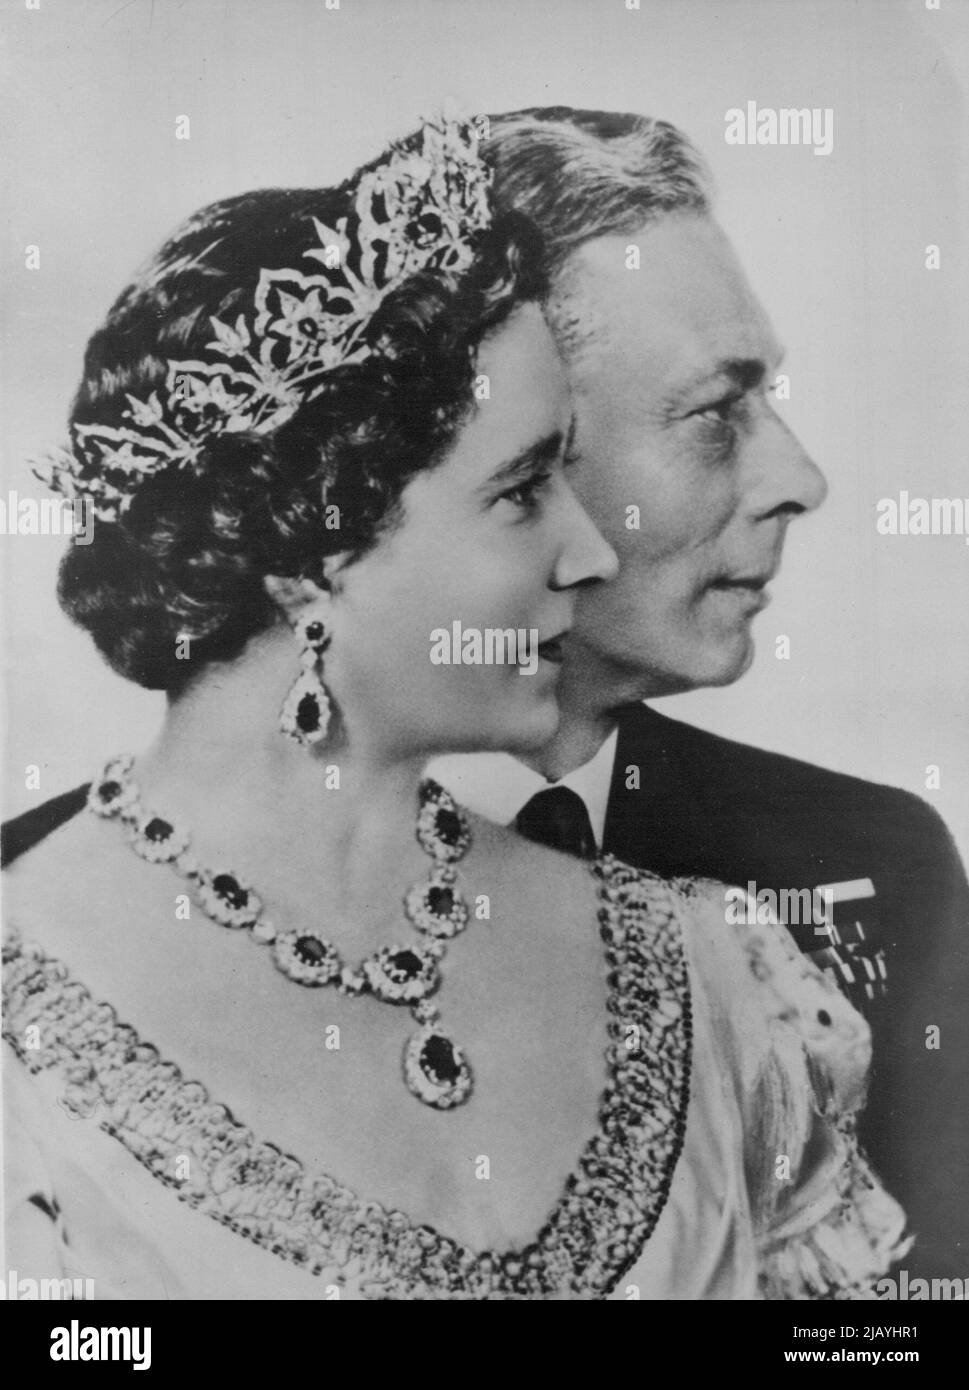 Re Giorgio e la regina Elisabetta celebrano il matrimonio d'argento -- Una nuova immagine dorothy appassire delle loro maestà Re Giorgio VI e la regina Elisabetta che il 26 aprile 1948. Festeggiarono il loro anniversario di matrimonio d'Argento. Maggio 03, 1948. (Foto di stampa associata). Foto Stock